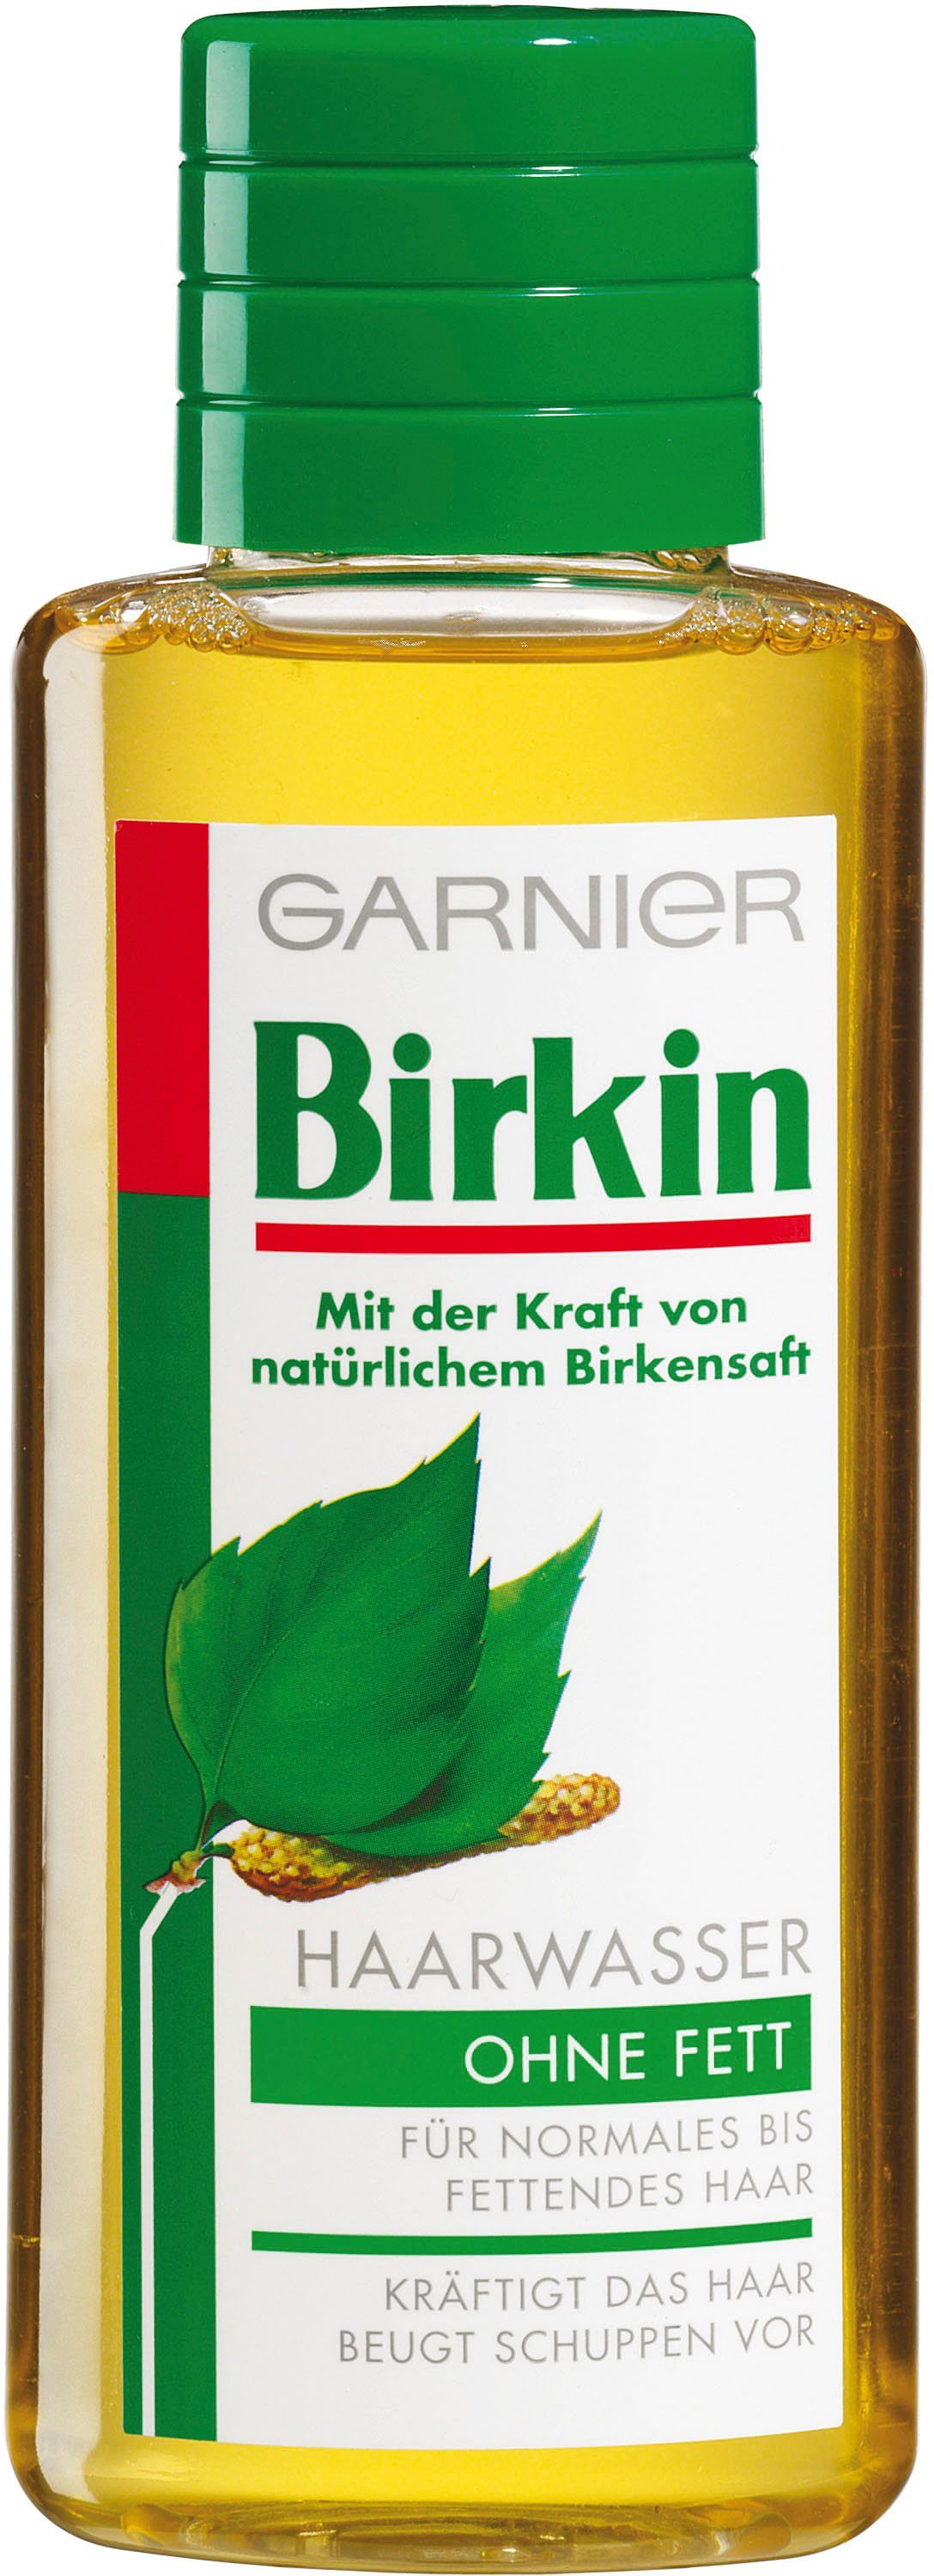 Birkin GARNIER Haarwasser ohne Haarwasser Fett